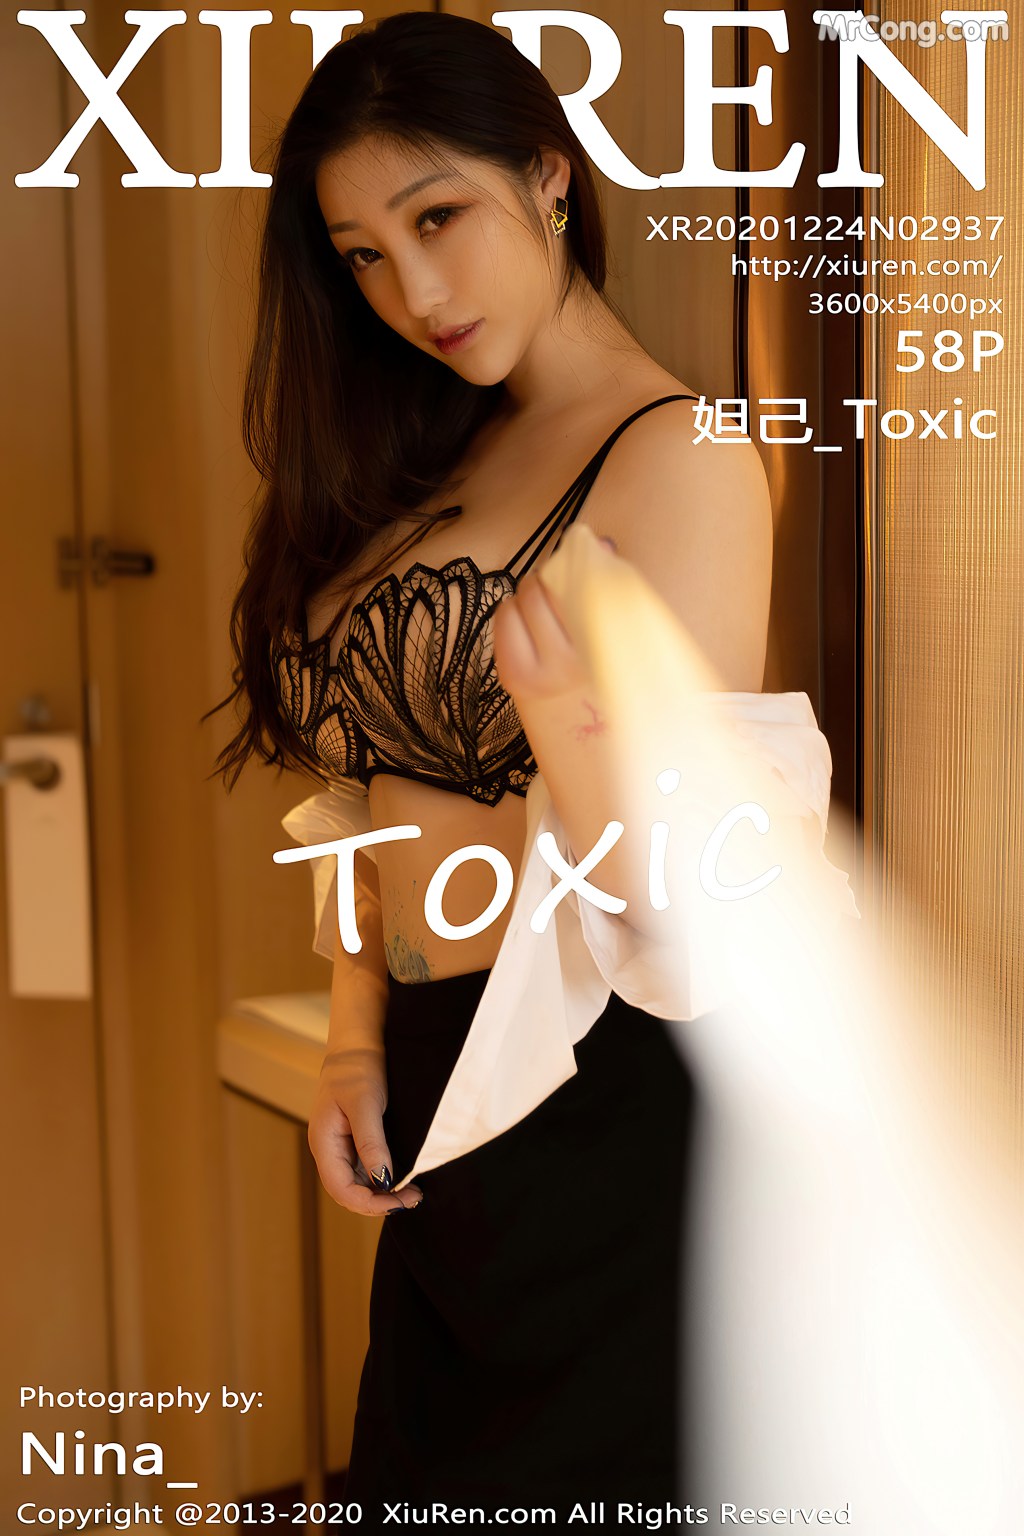 [XIUREN] No.2937 Daji_Toxic 妲己_Toxic Cover Photo